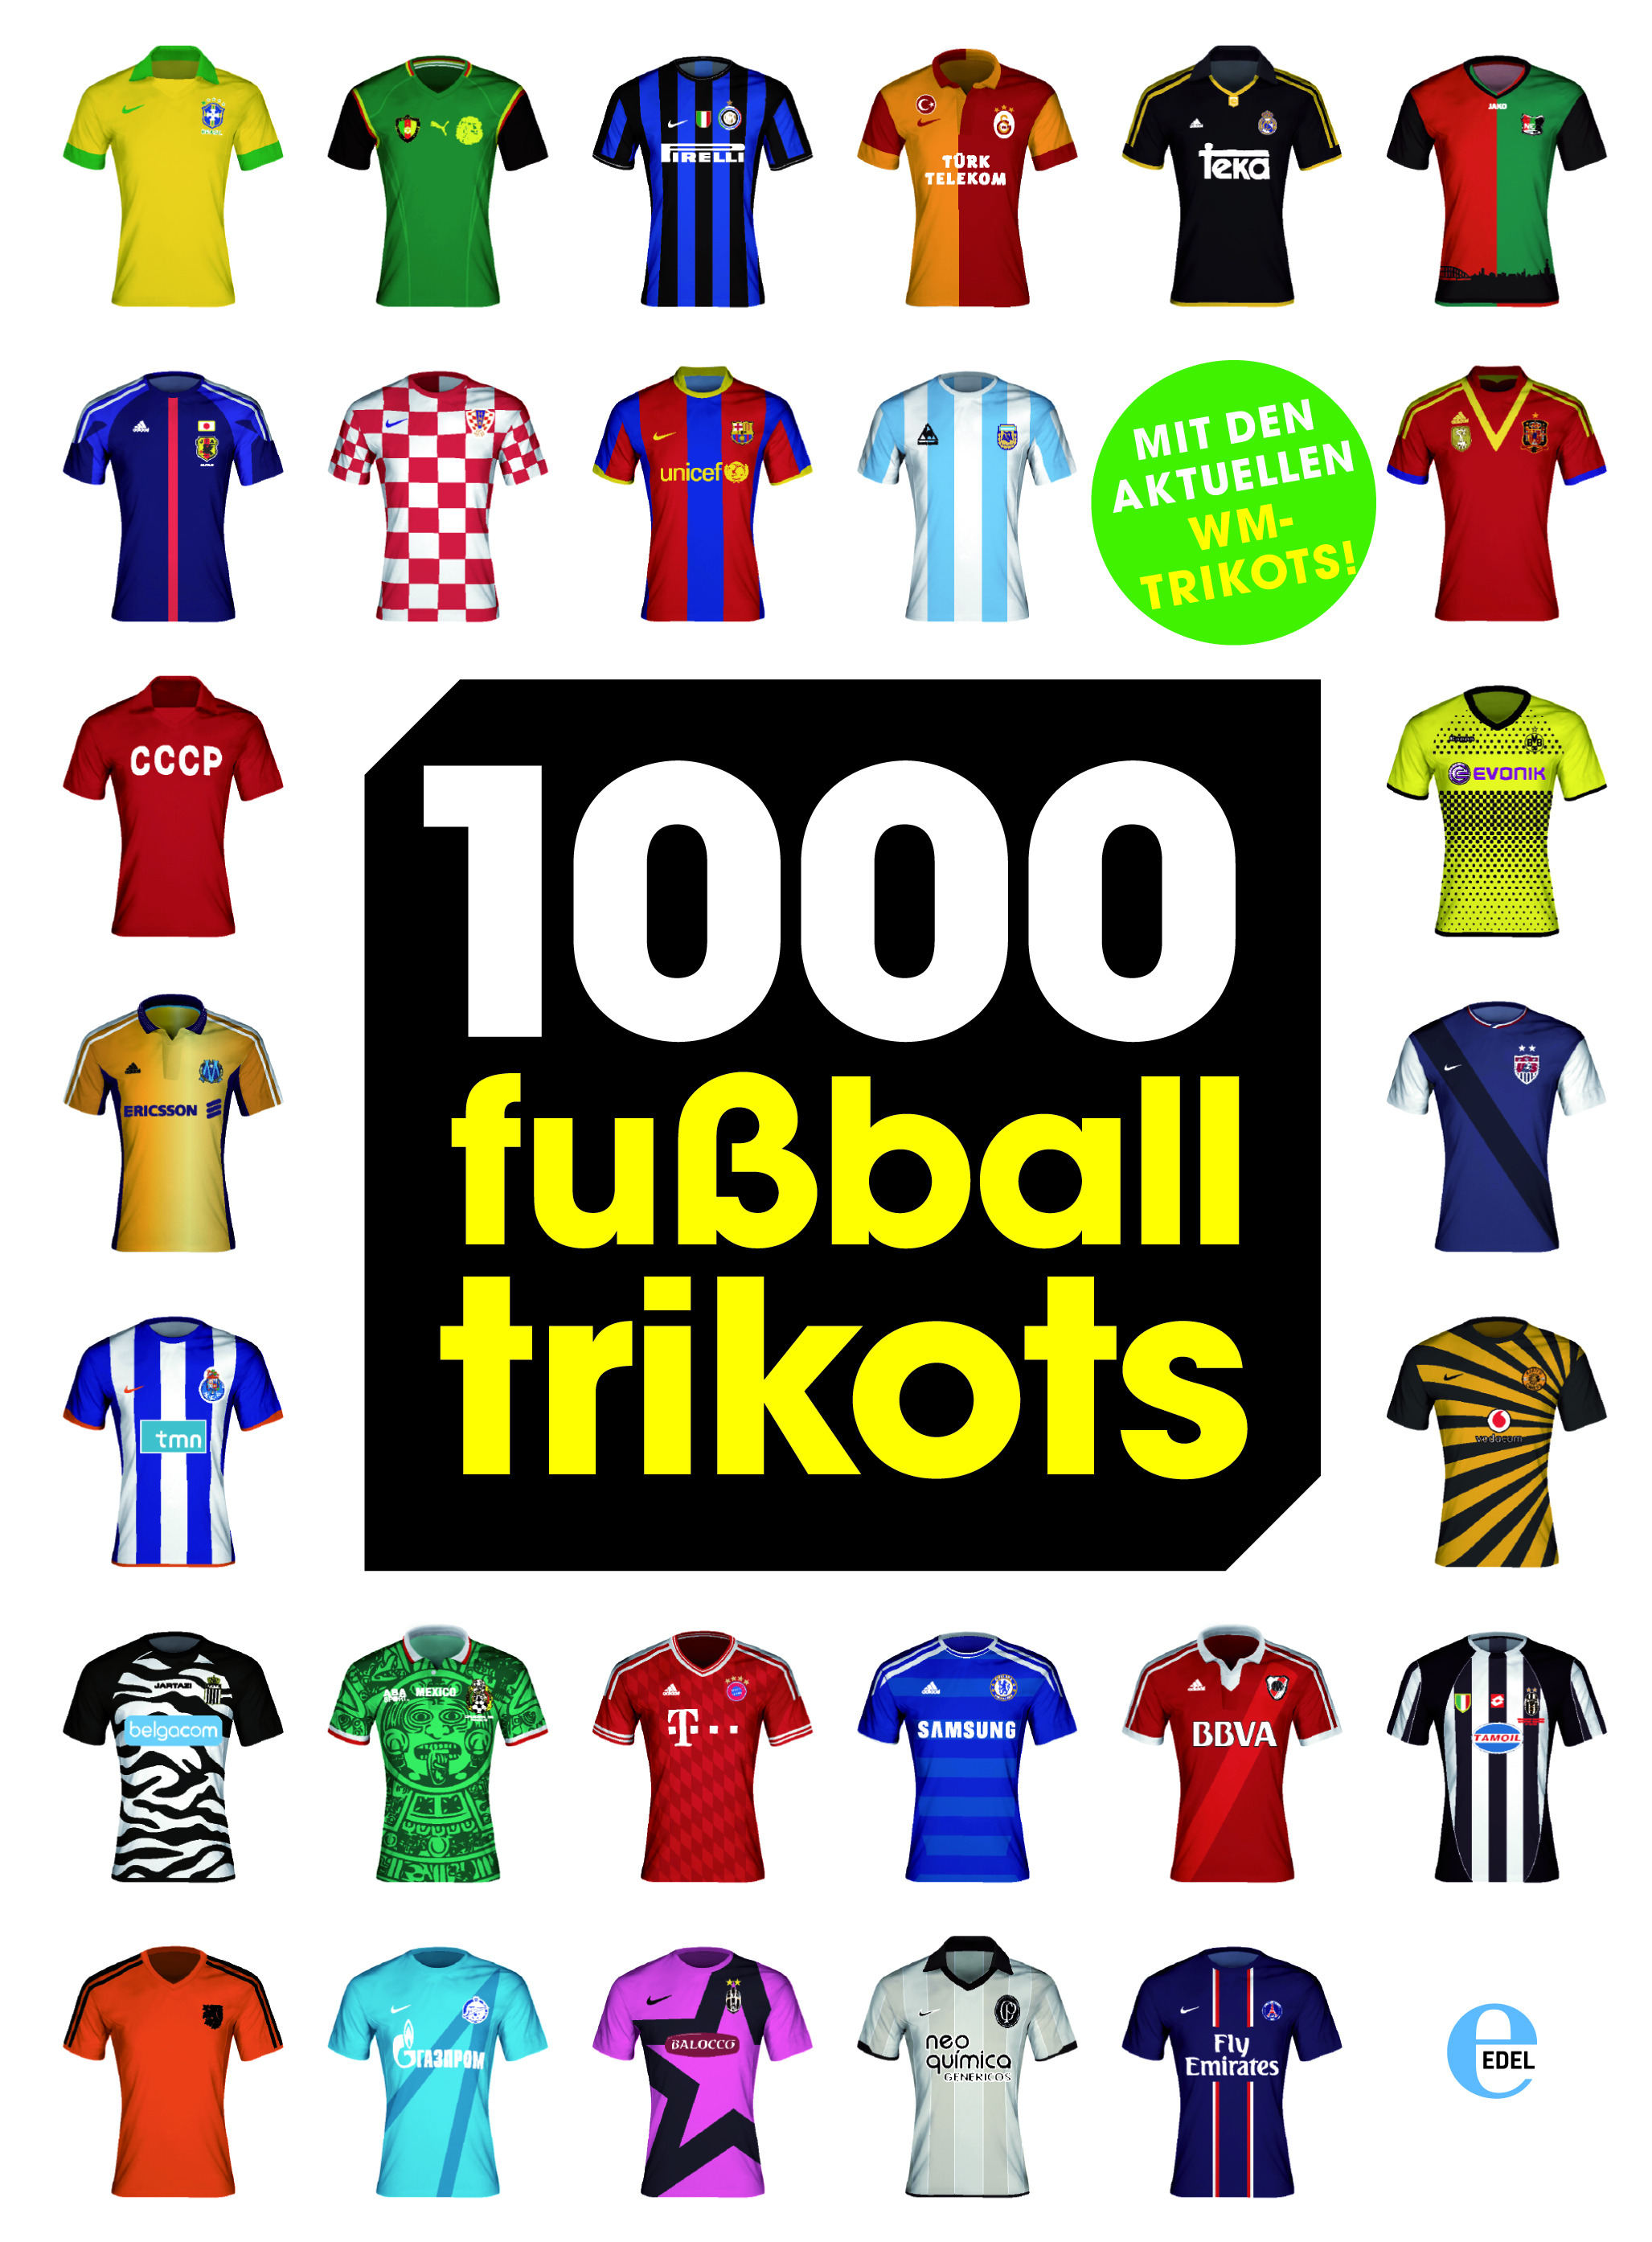 1000 Fußball Trikots